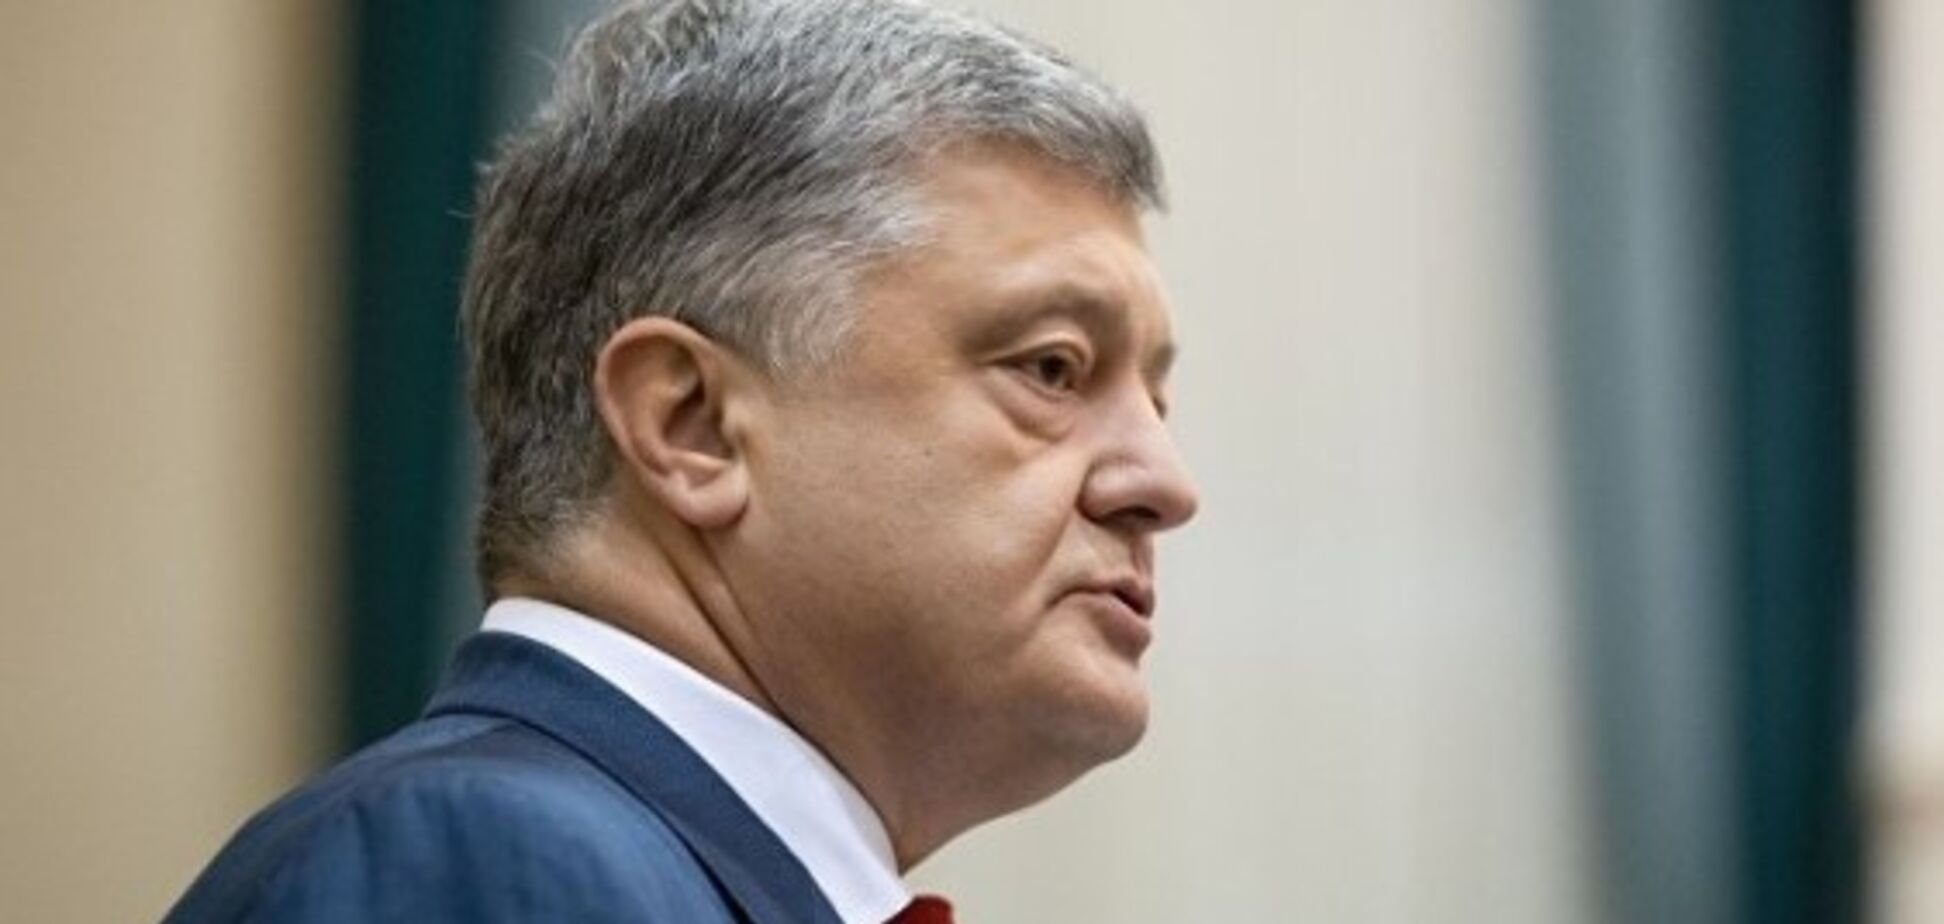 Рейтингам Порошенко не повредит искусственно раздутый скандал в 'Укроборонпроме' – эксперт